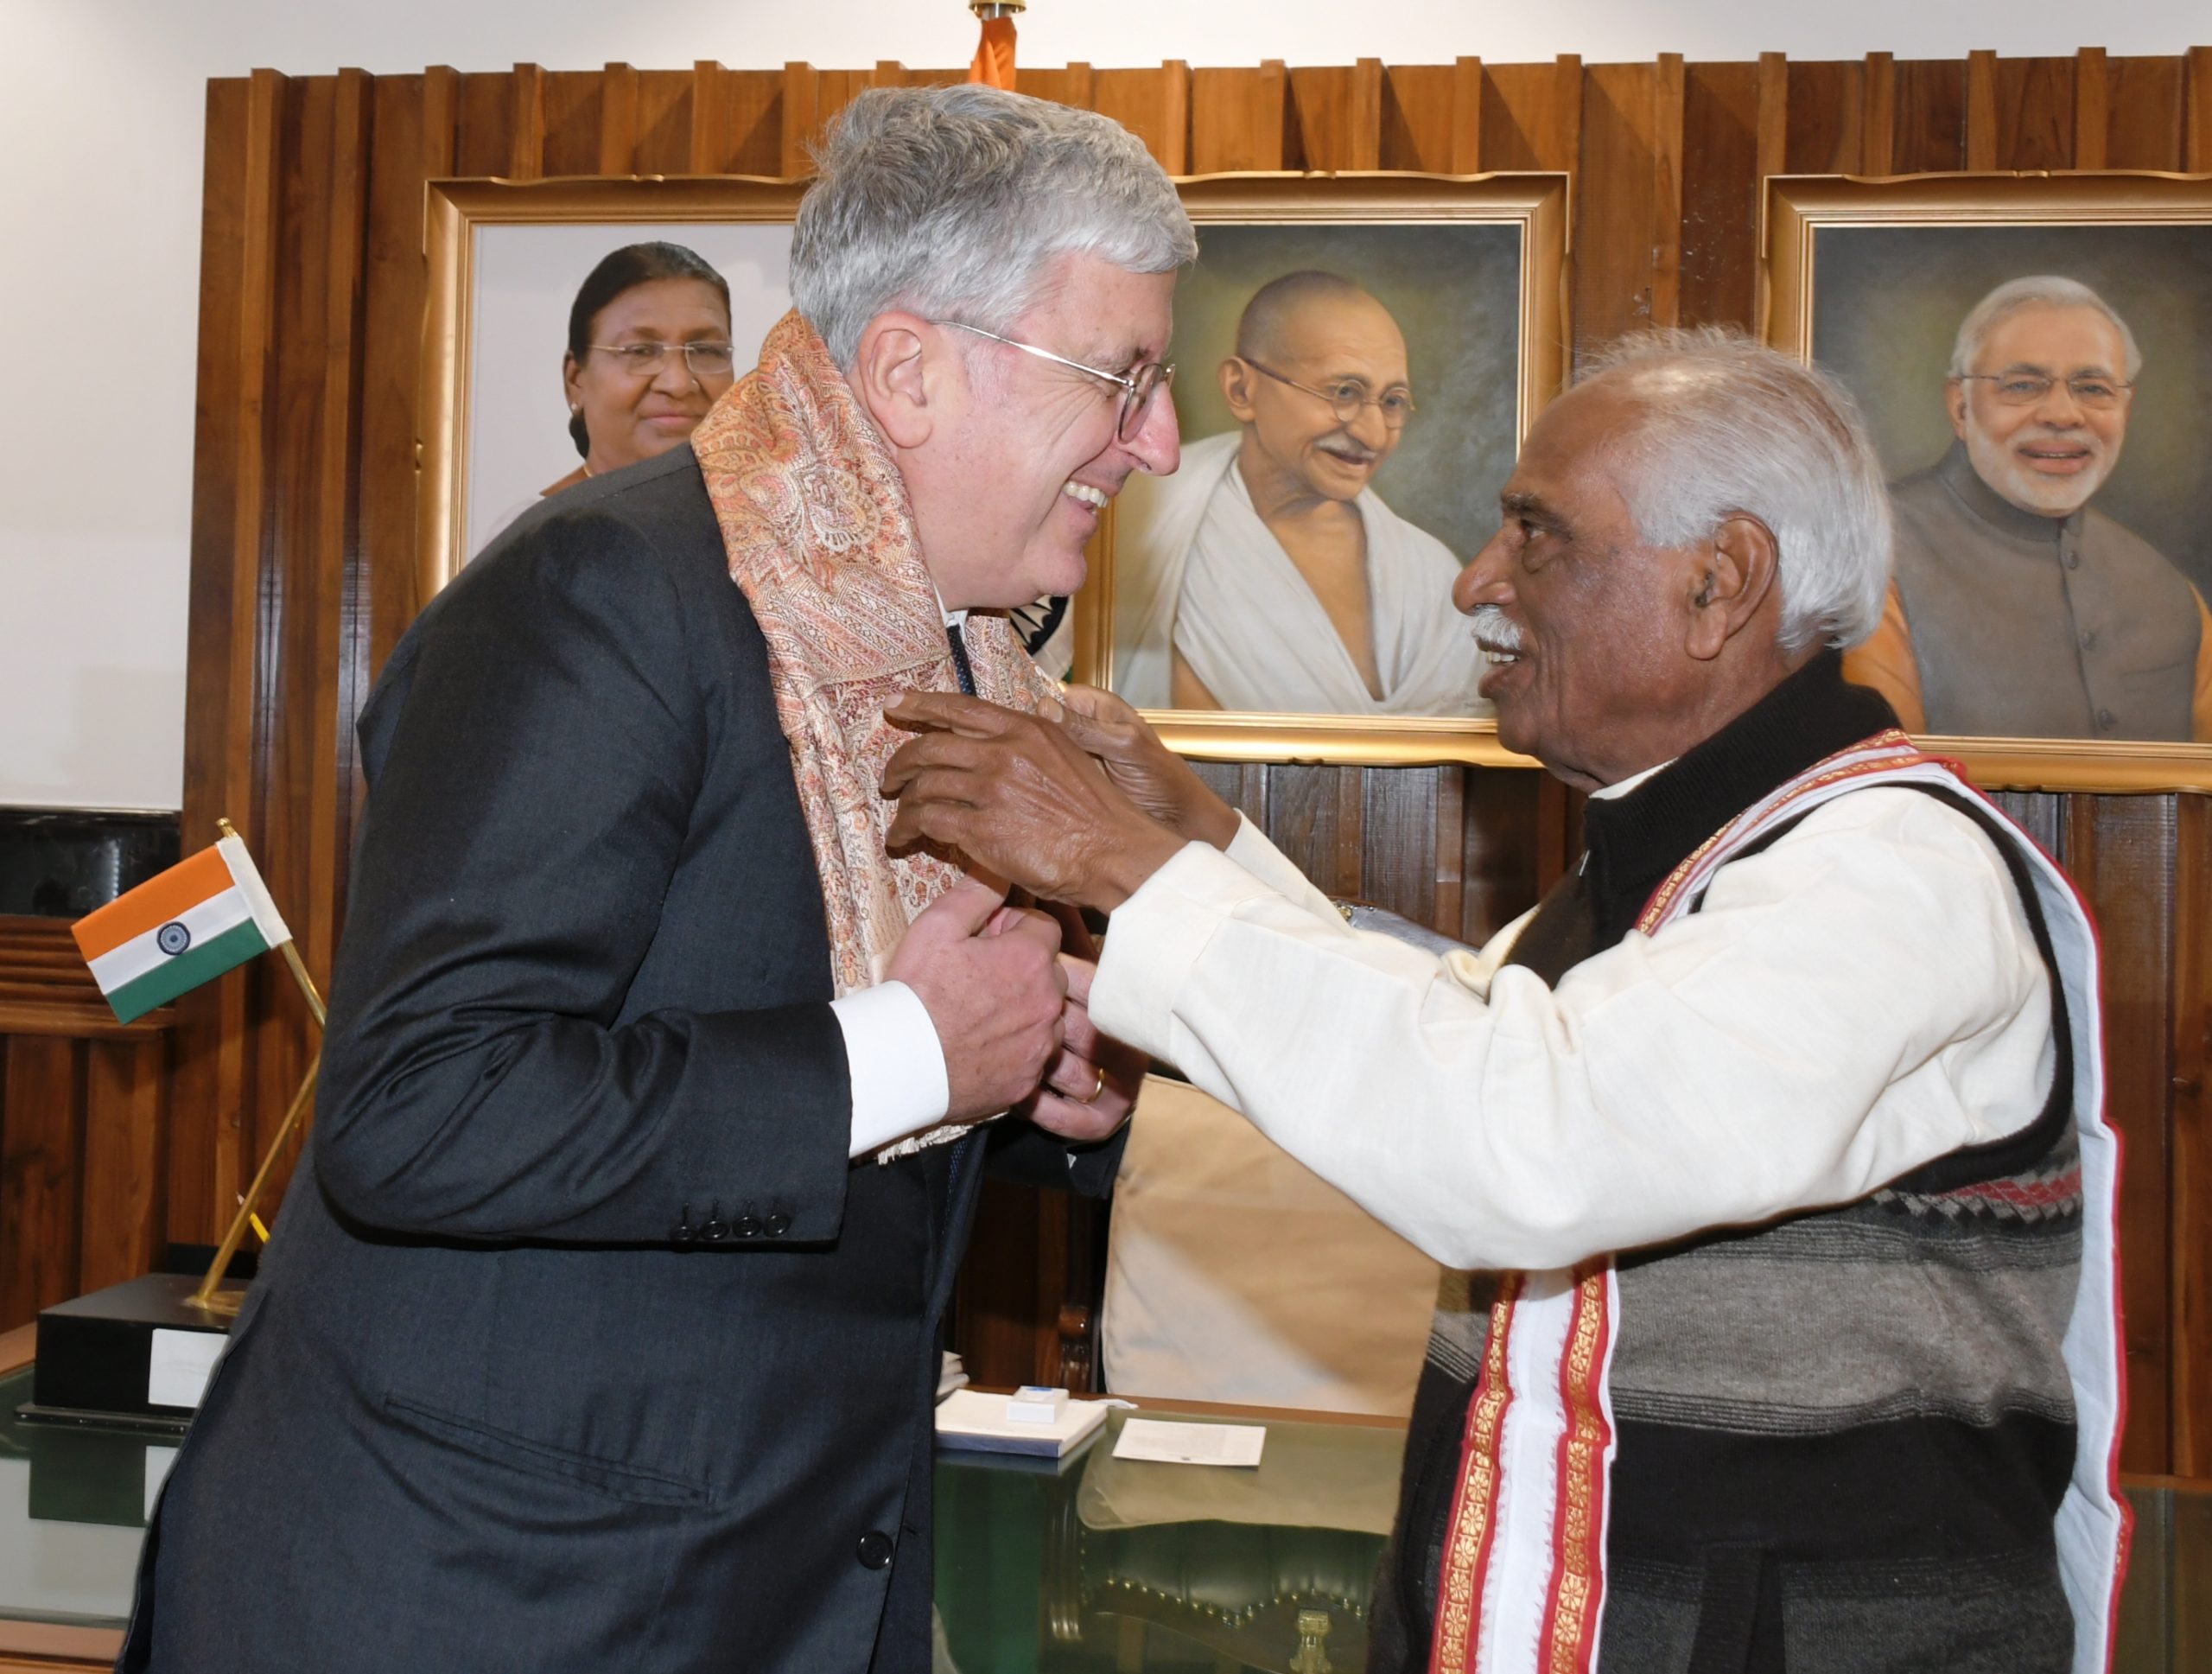 राज्यपाल श्री बंडारू दत्तात्रेय मंगलवार को राजभवन मे भारत मे इटली के राजदूत विनसेन्जो डी लुका को सम्मानित करते हुए